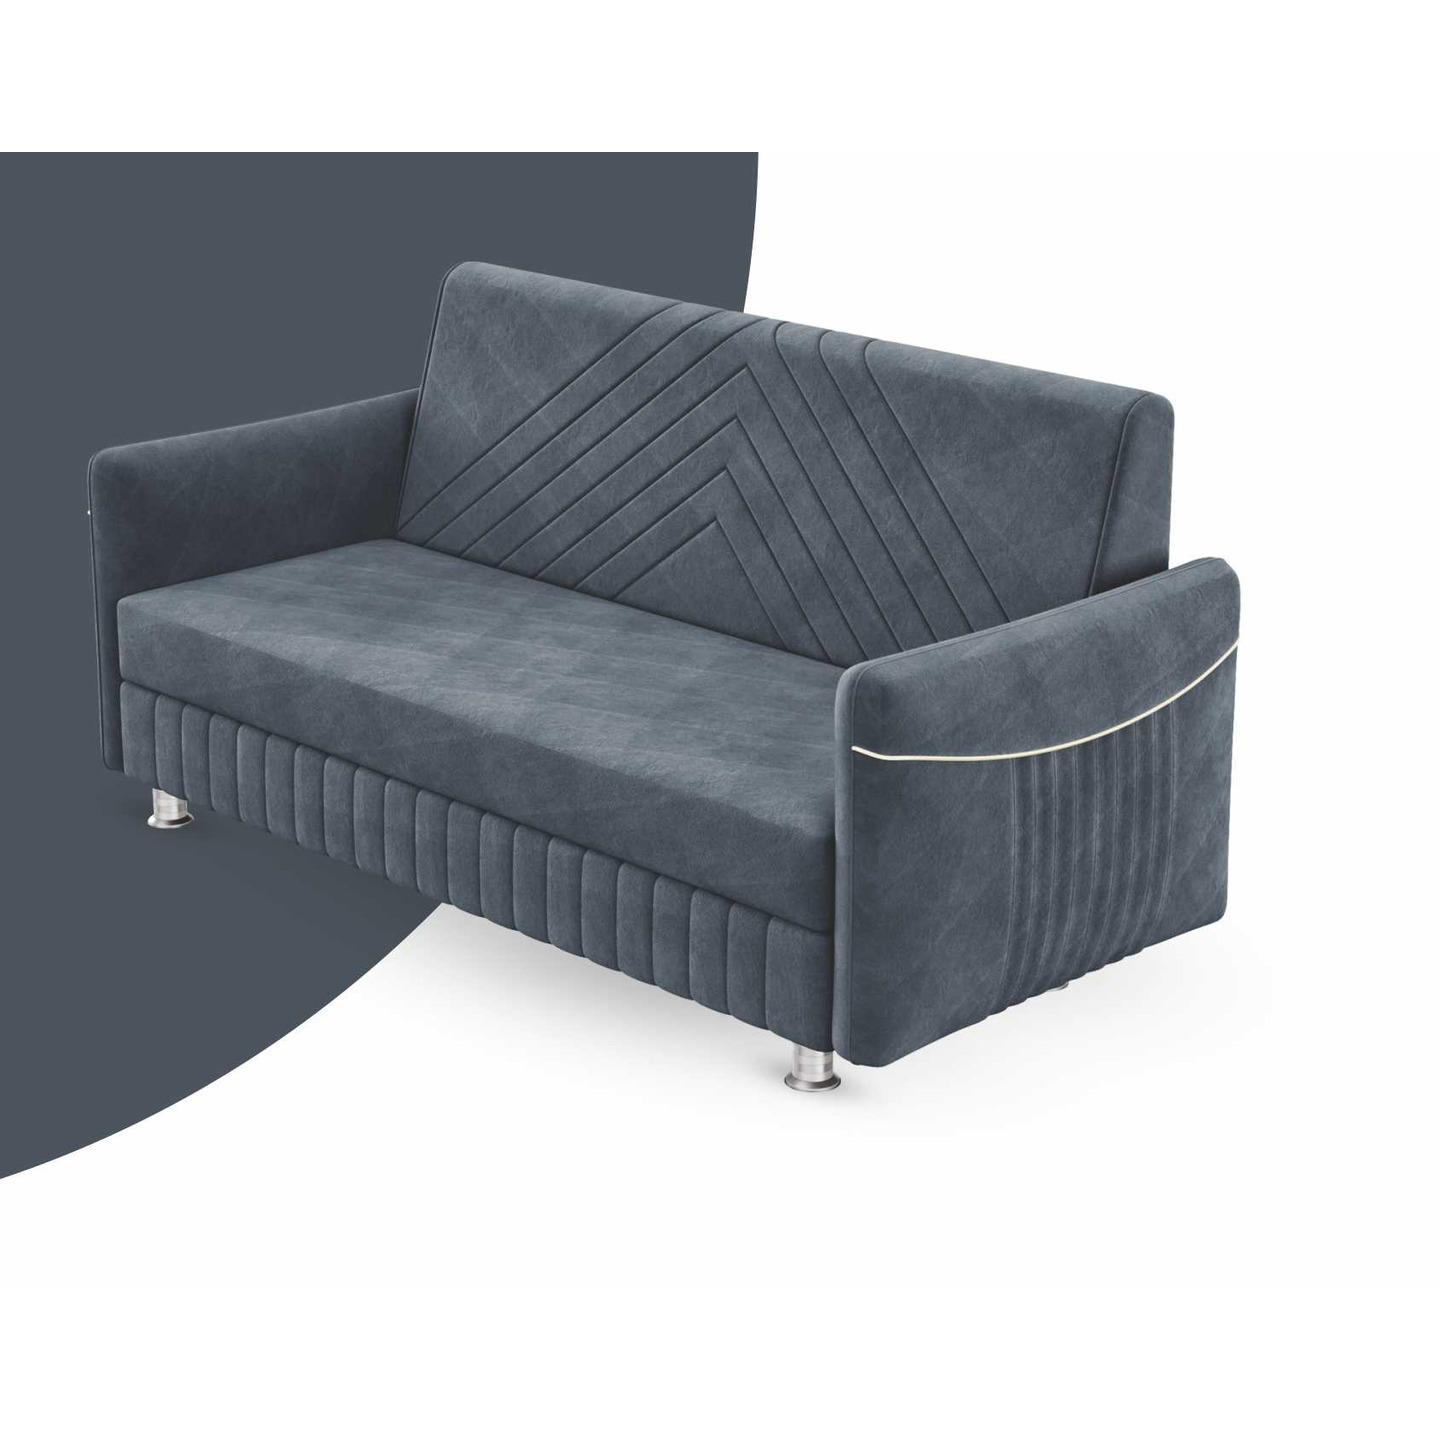 RLF Sofa Set 3+2 DD-581 In Grey Colour